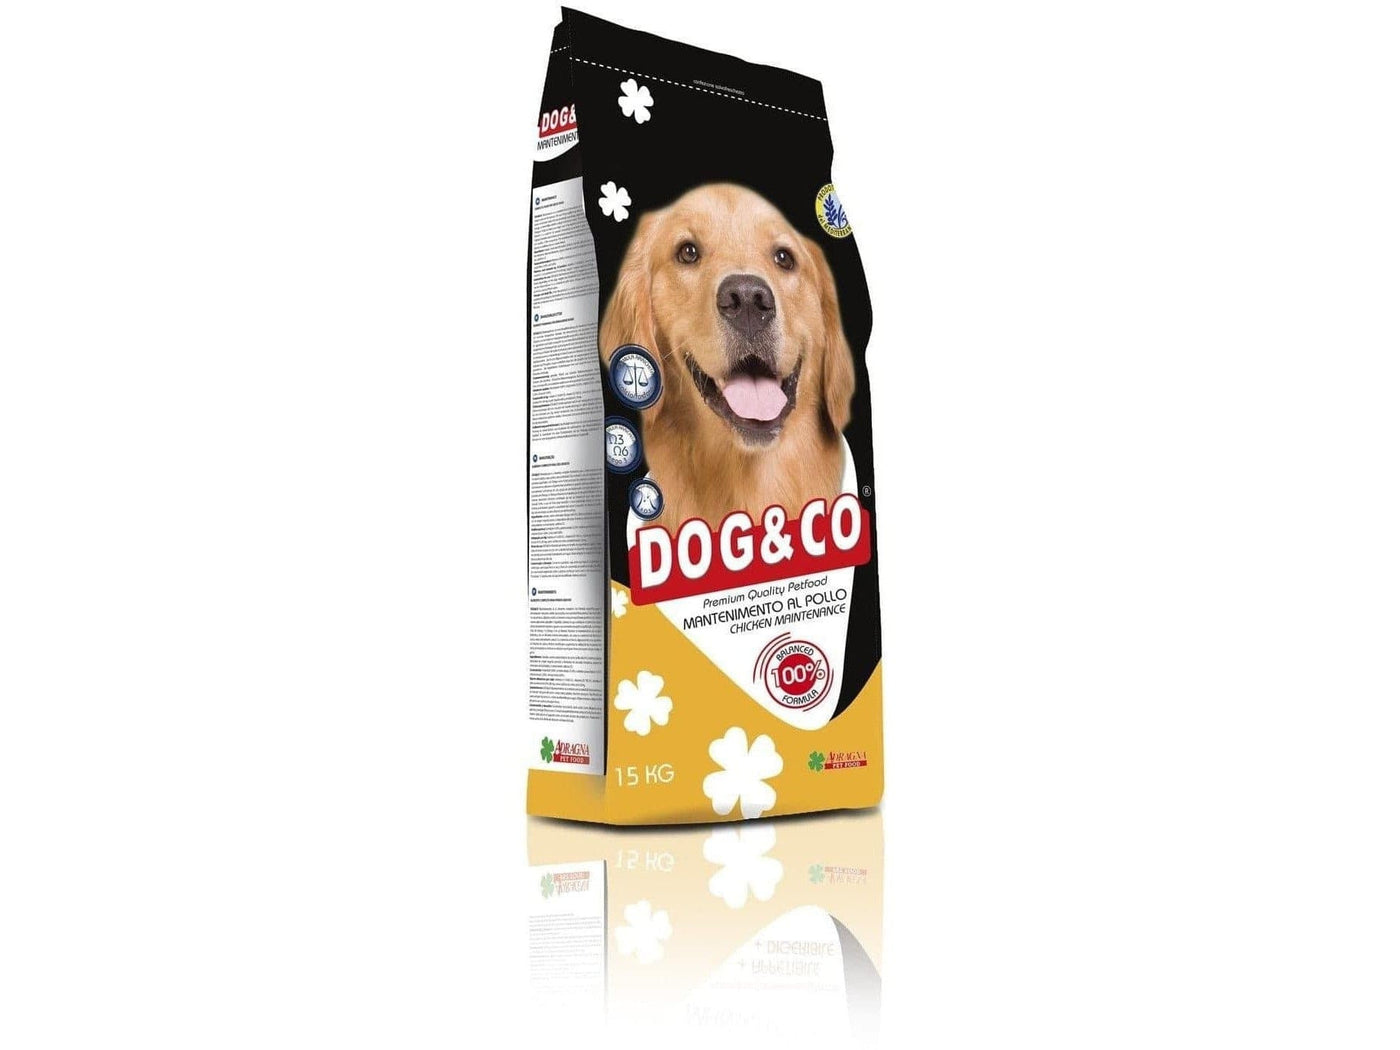 DOG & CO ADULT Chicken maintenance dry dog food  15kg